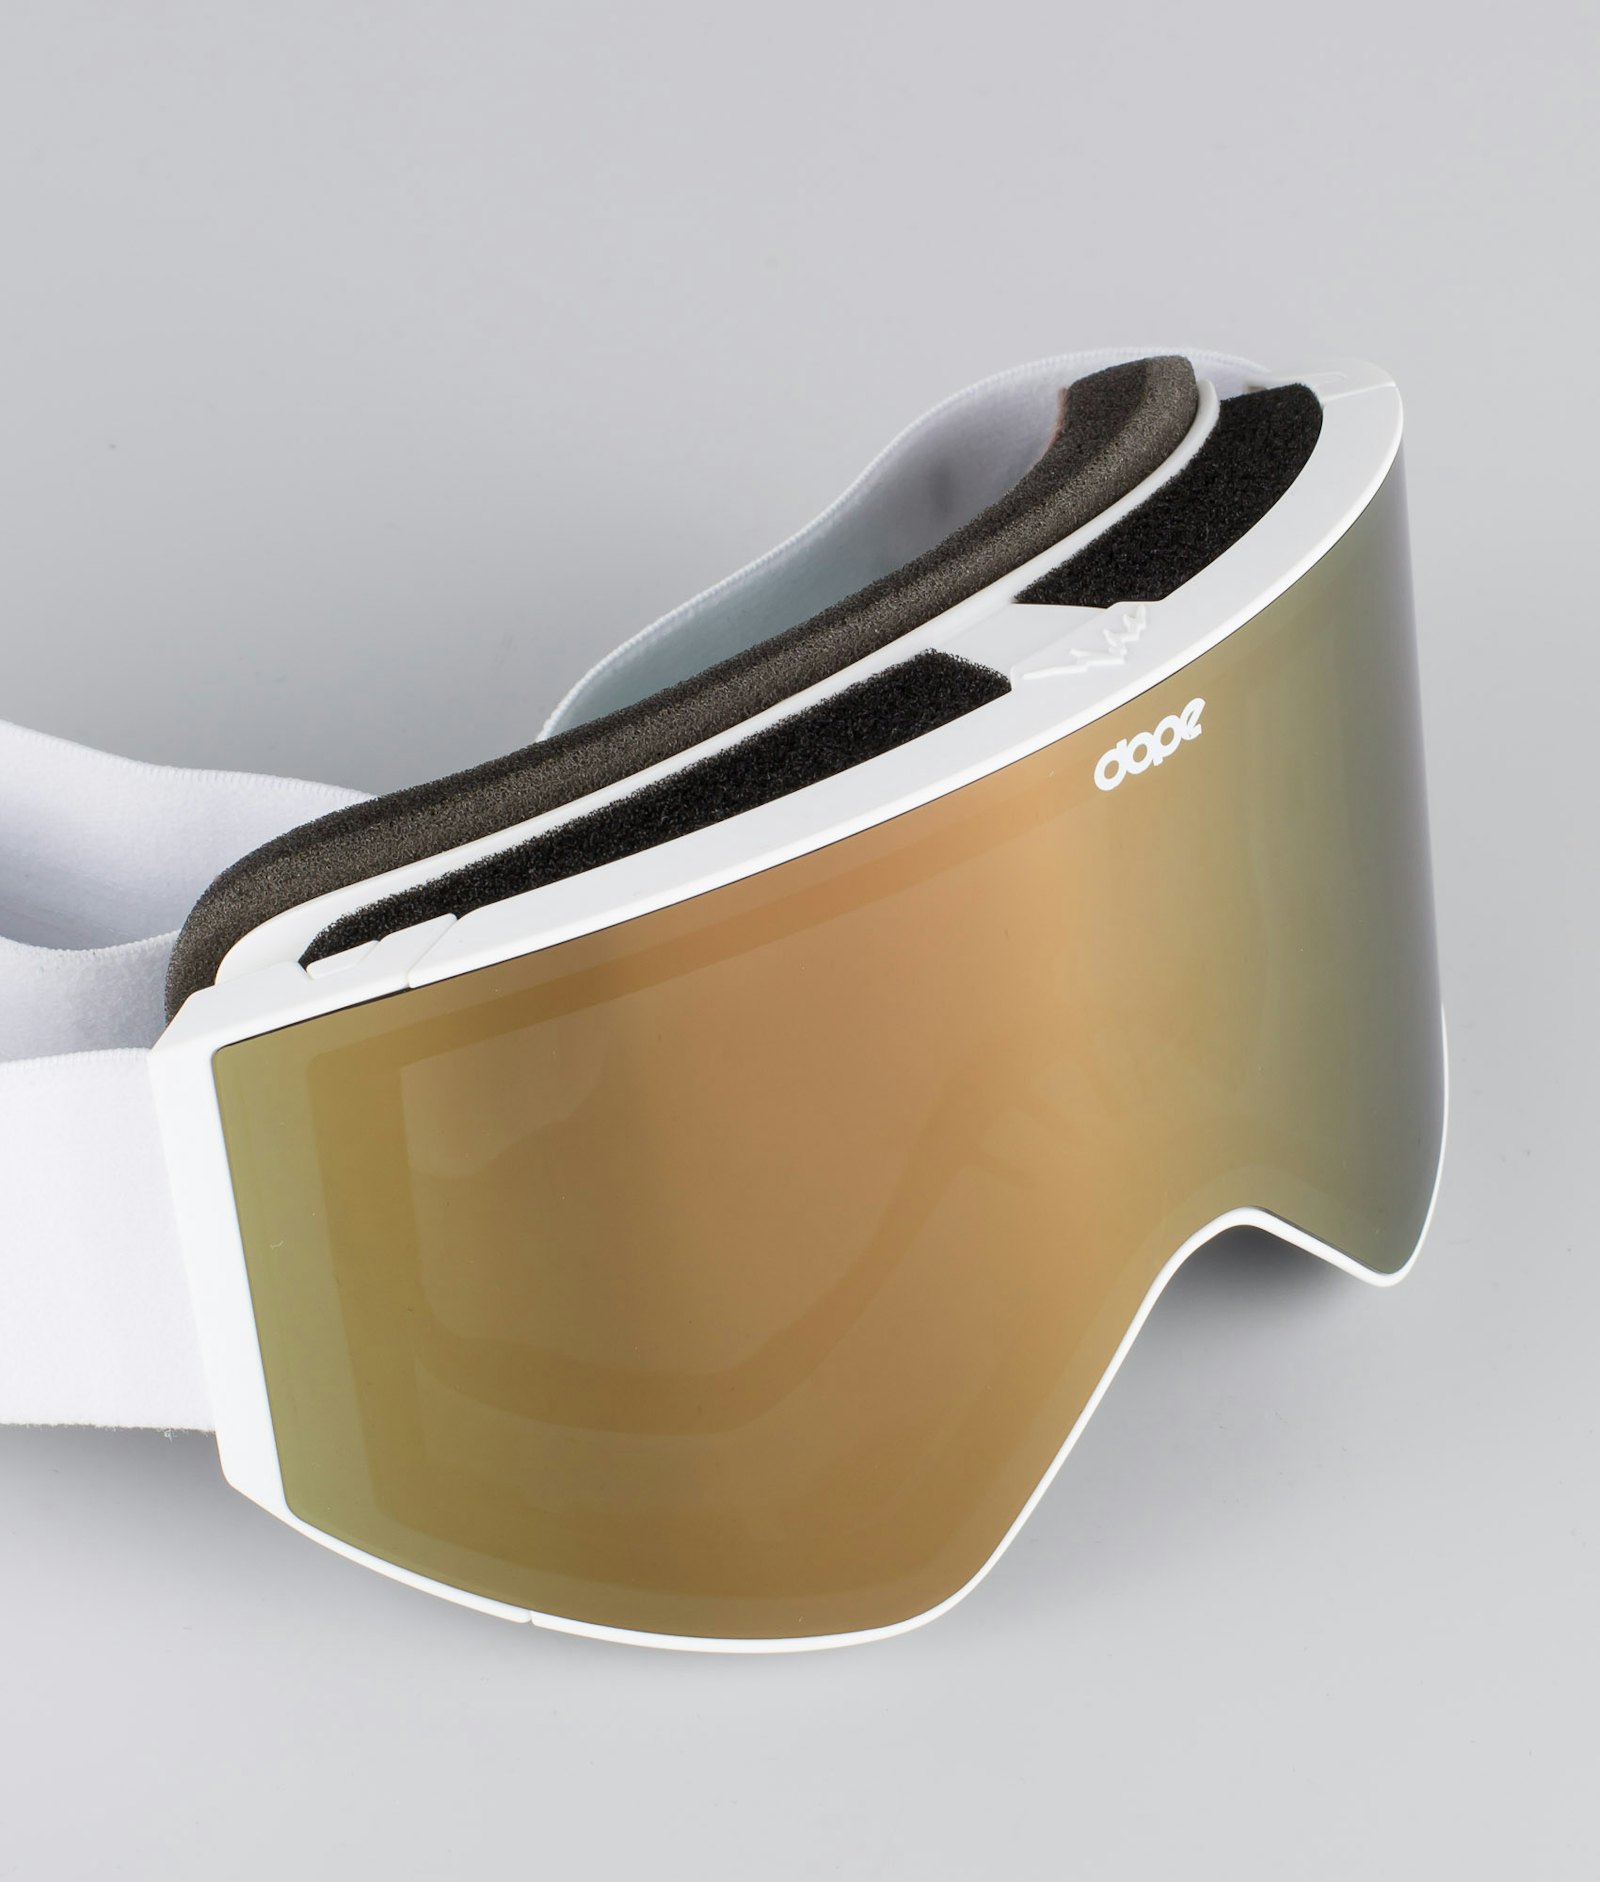 Sight 2020 Ski Goggles White/Champagne, Image 4 of 6